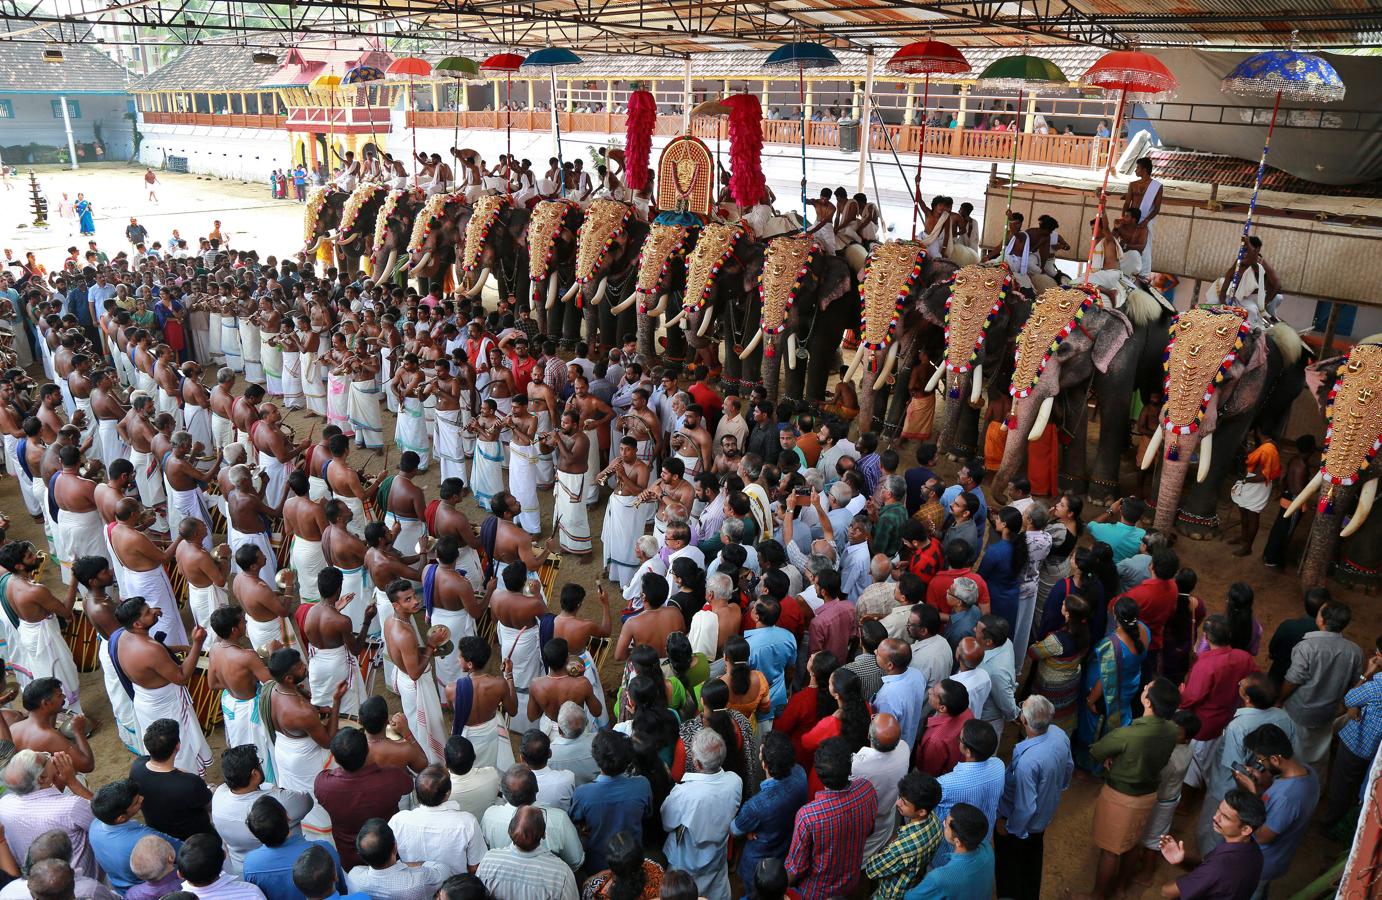 El festival anual Vrischikolasavam ya ha comenzado en el Templo Sree Poornathrayeesa de Kochi, India. Esta festividad dura ocho días y presenta una colorida procesión de elefantes decorados junto al sonido de tambores.